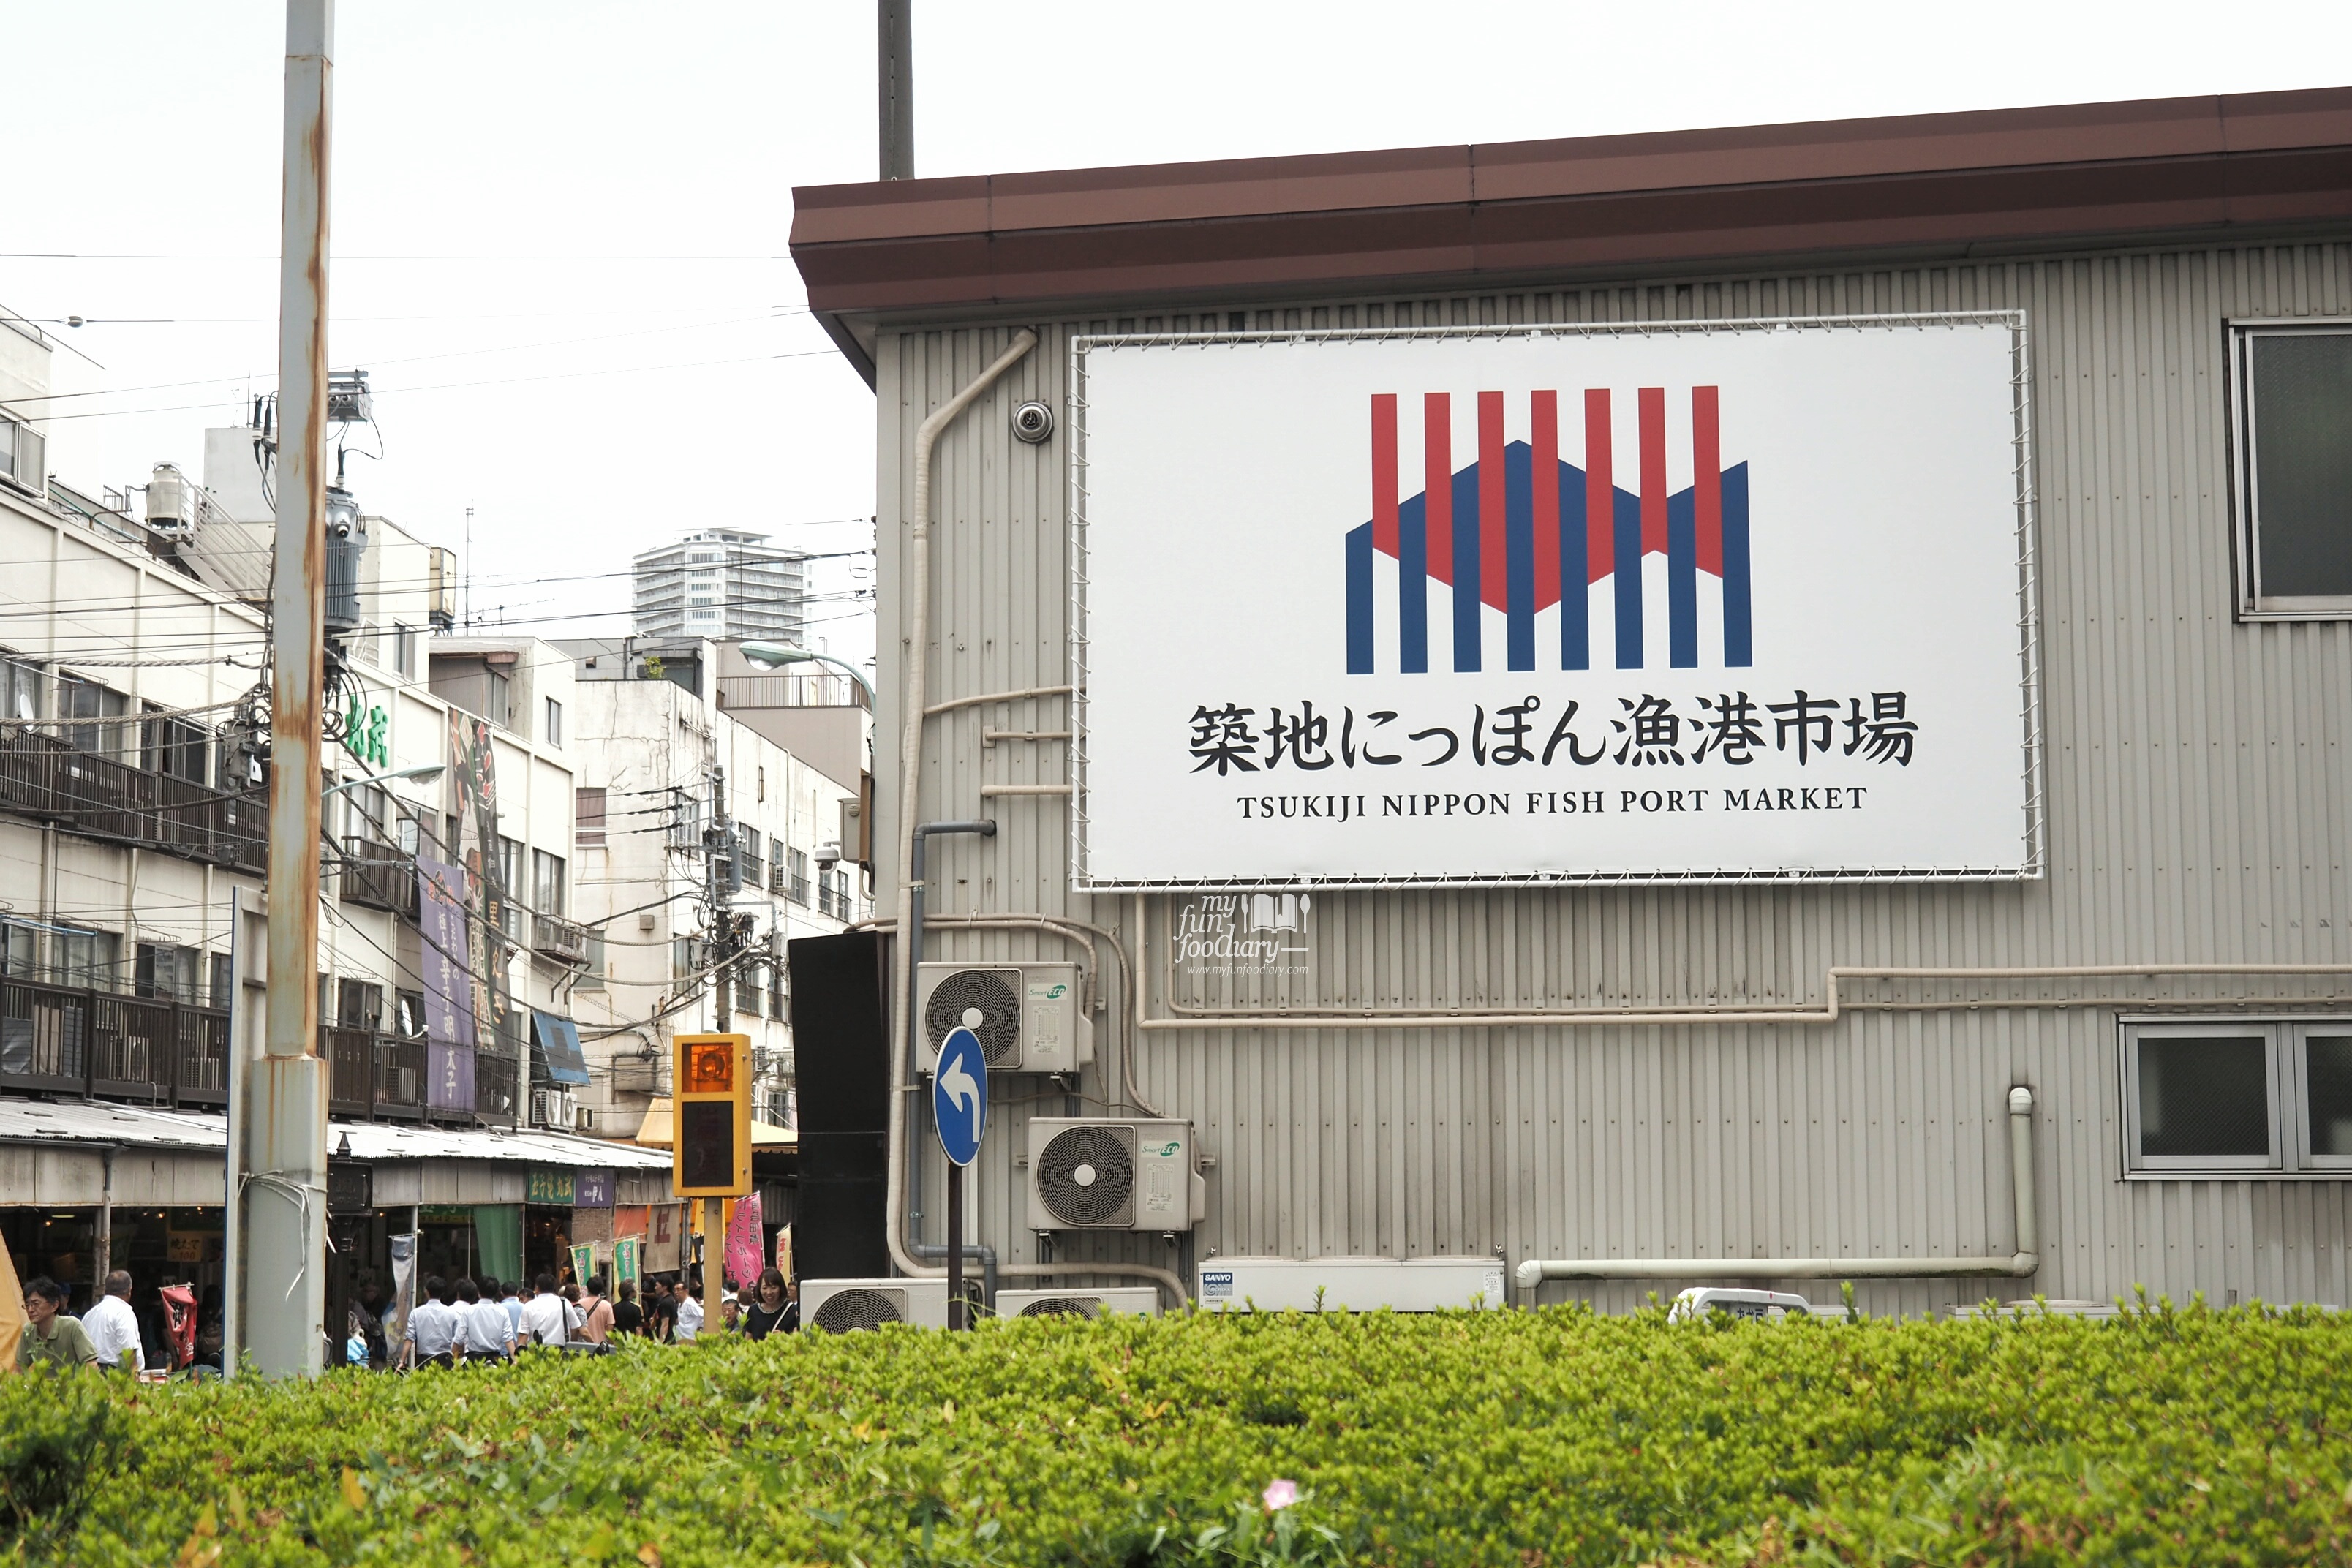 Tsukiji Fish Market Signboard by Myfunfoodiary